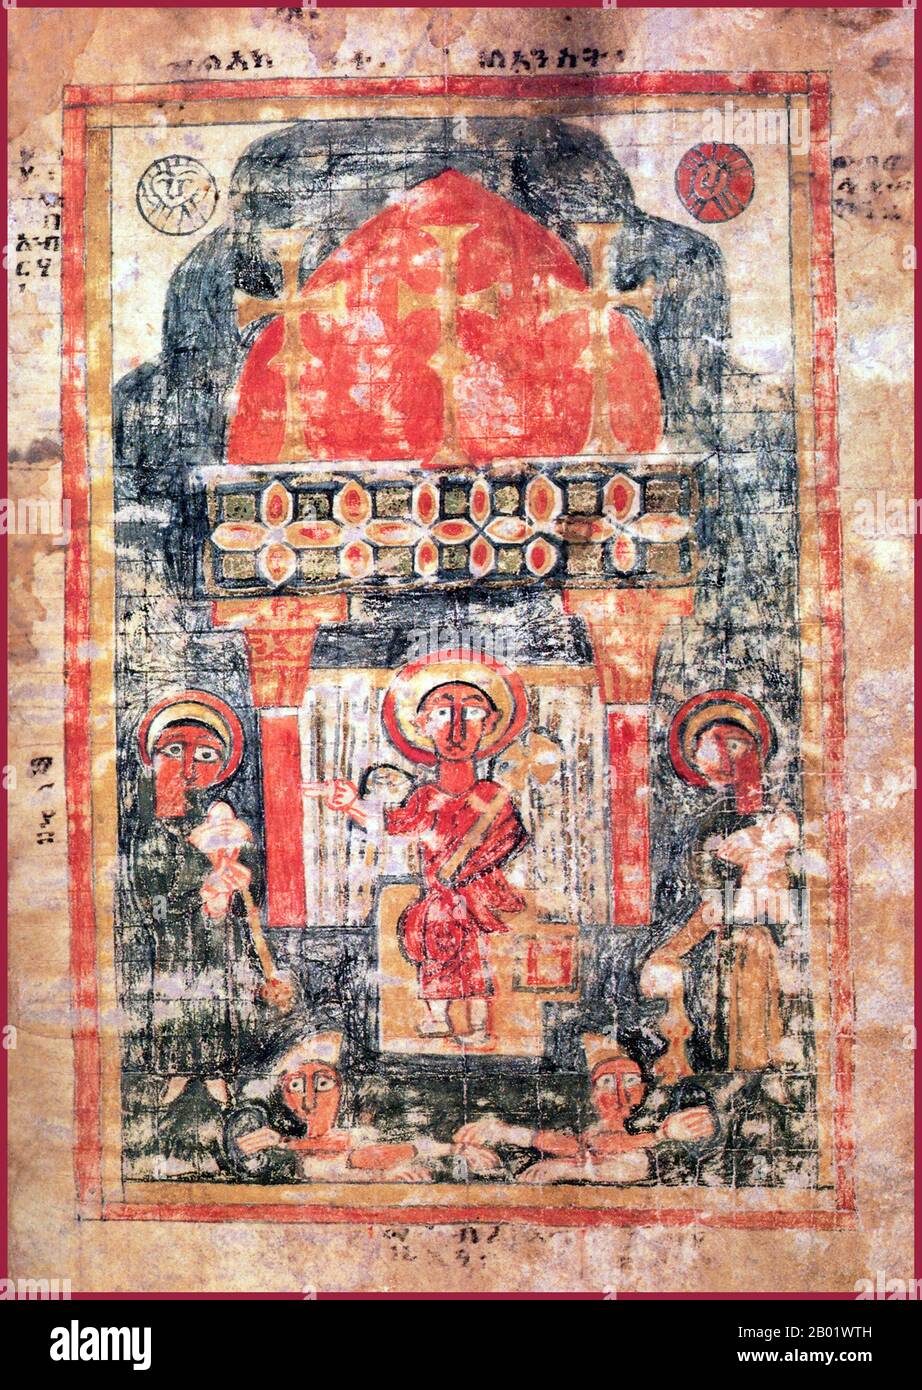 Le christianisme en Ethiopie date de la première AD du siècle, et cette longue tradition rend l'Ethiopie unique parmi les pays d'Afrique subsaharienne. Le christianisme dans ce pays est divisé en plusieurs groupes. La plus grande et la plus ancienne est l'église éthiopienne orthodoxe Tewahedo (dans Amharic: የኢትዮጵያ ኦርቶዶክስ ተዋሕዶ ቤተክርስትያን Yäityop'ya ortodoks täwahedo bétäkrestyan) qui est une église orthodoxe orientale en Ethiopie qui faisait partie de l'Eglise orthodoxe copte jusqu'en 1959, quand il a été accordé son propre Patriarche par le Pape orthodoxe copte d'Alexandrie et Patriarche De Toute l'Afrique Cyril VI Le seul chrétien pré-colonial Banque D'Images